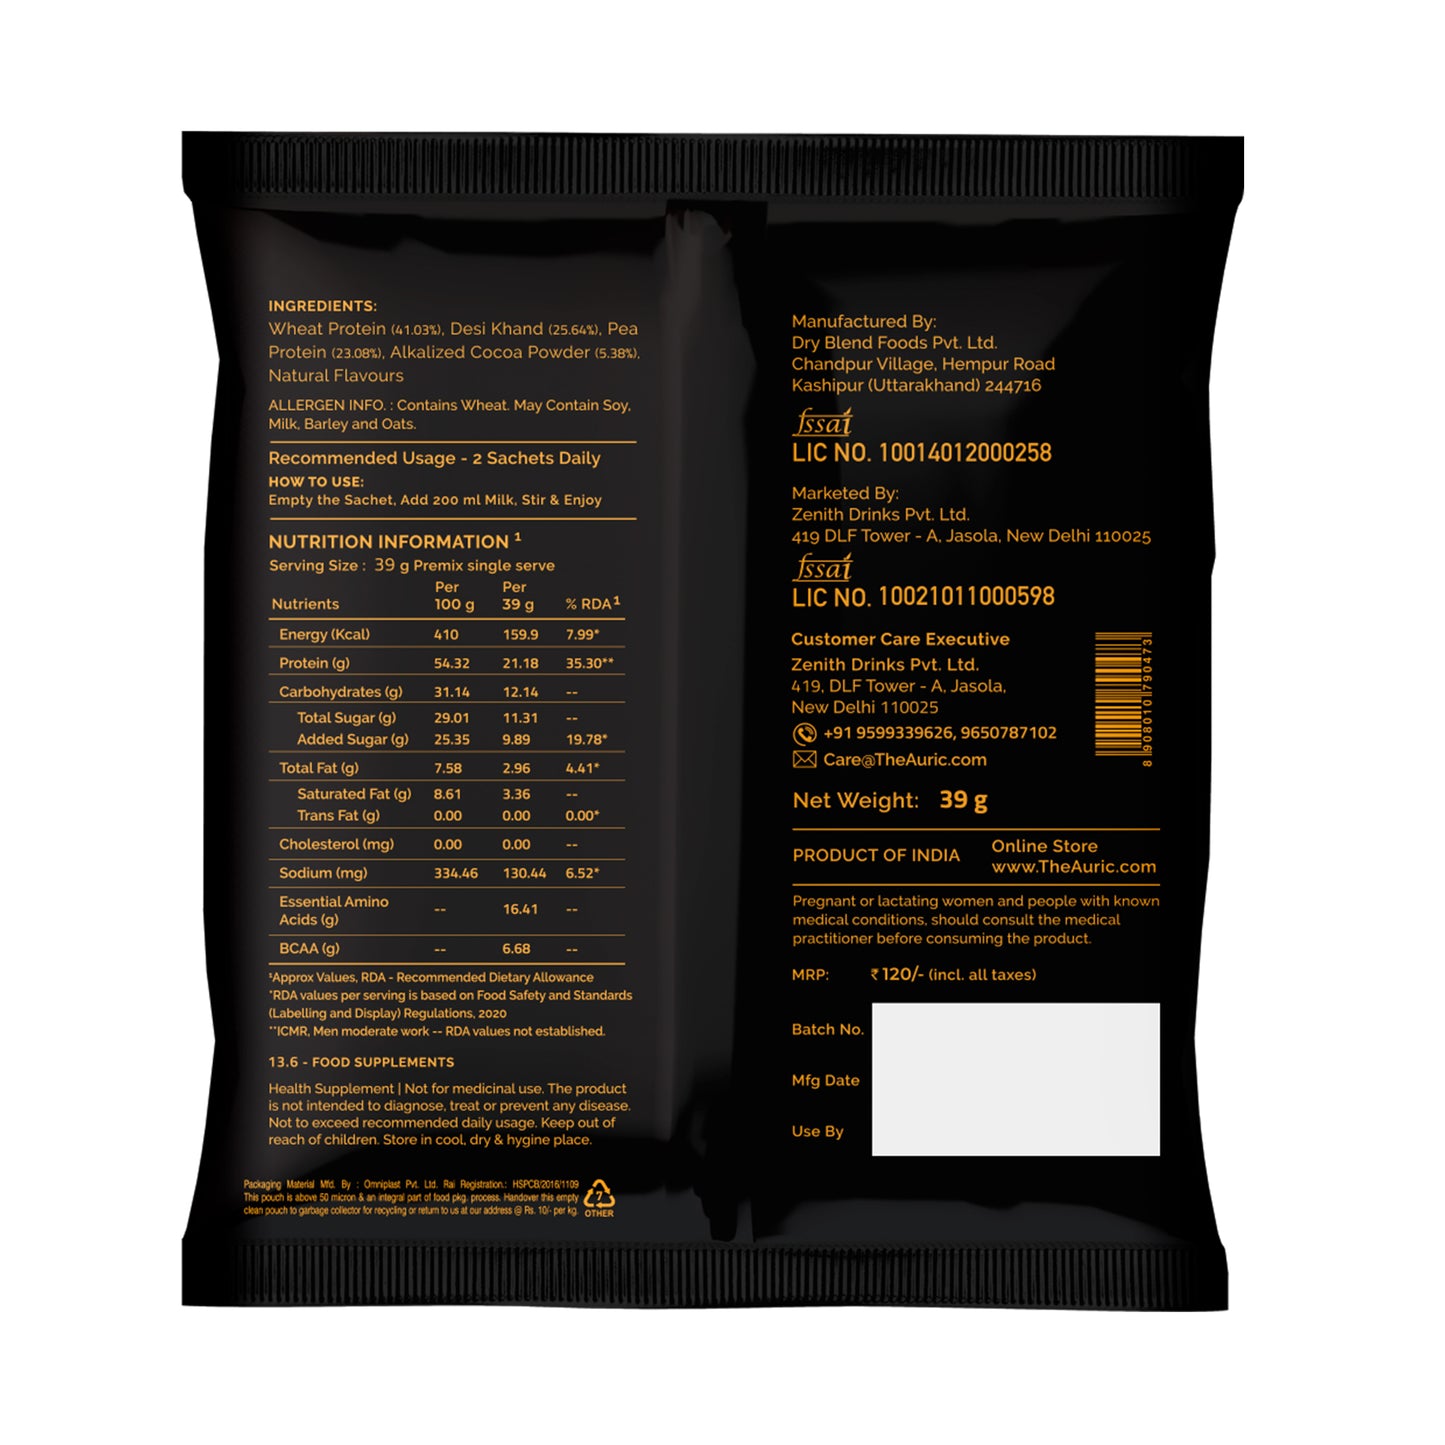 Auric Vegan Protein Powder for Men & Women (Dark Chocolate Flavor) 8 Sachet